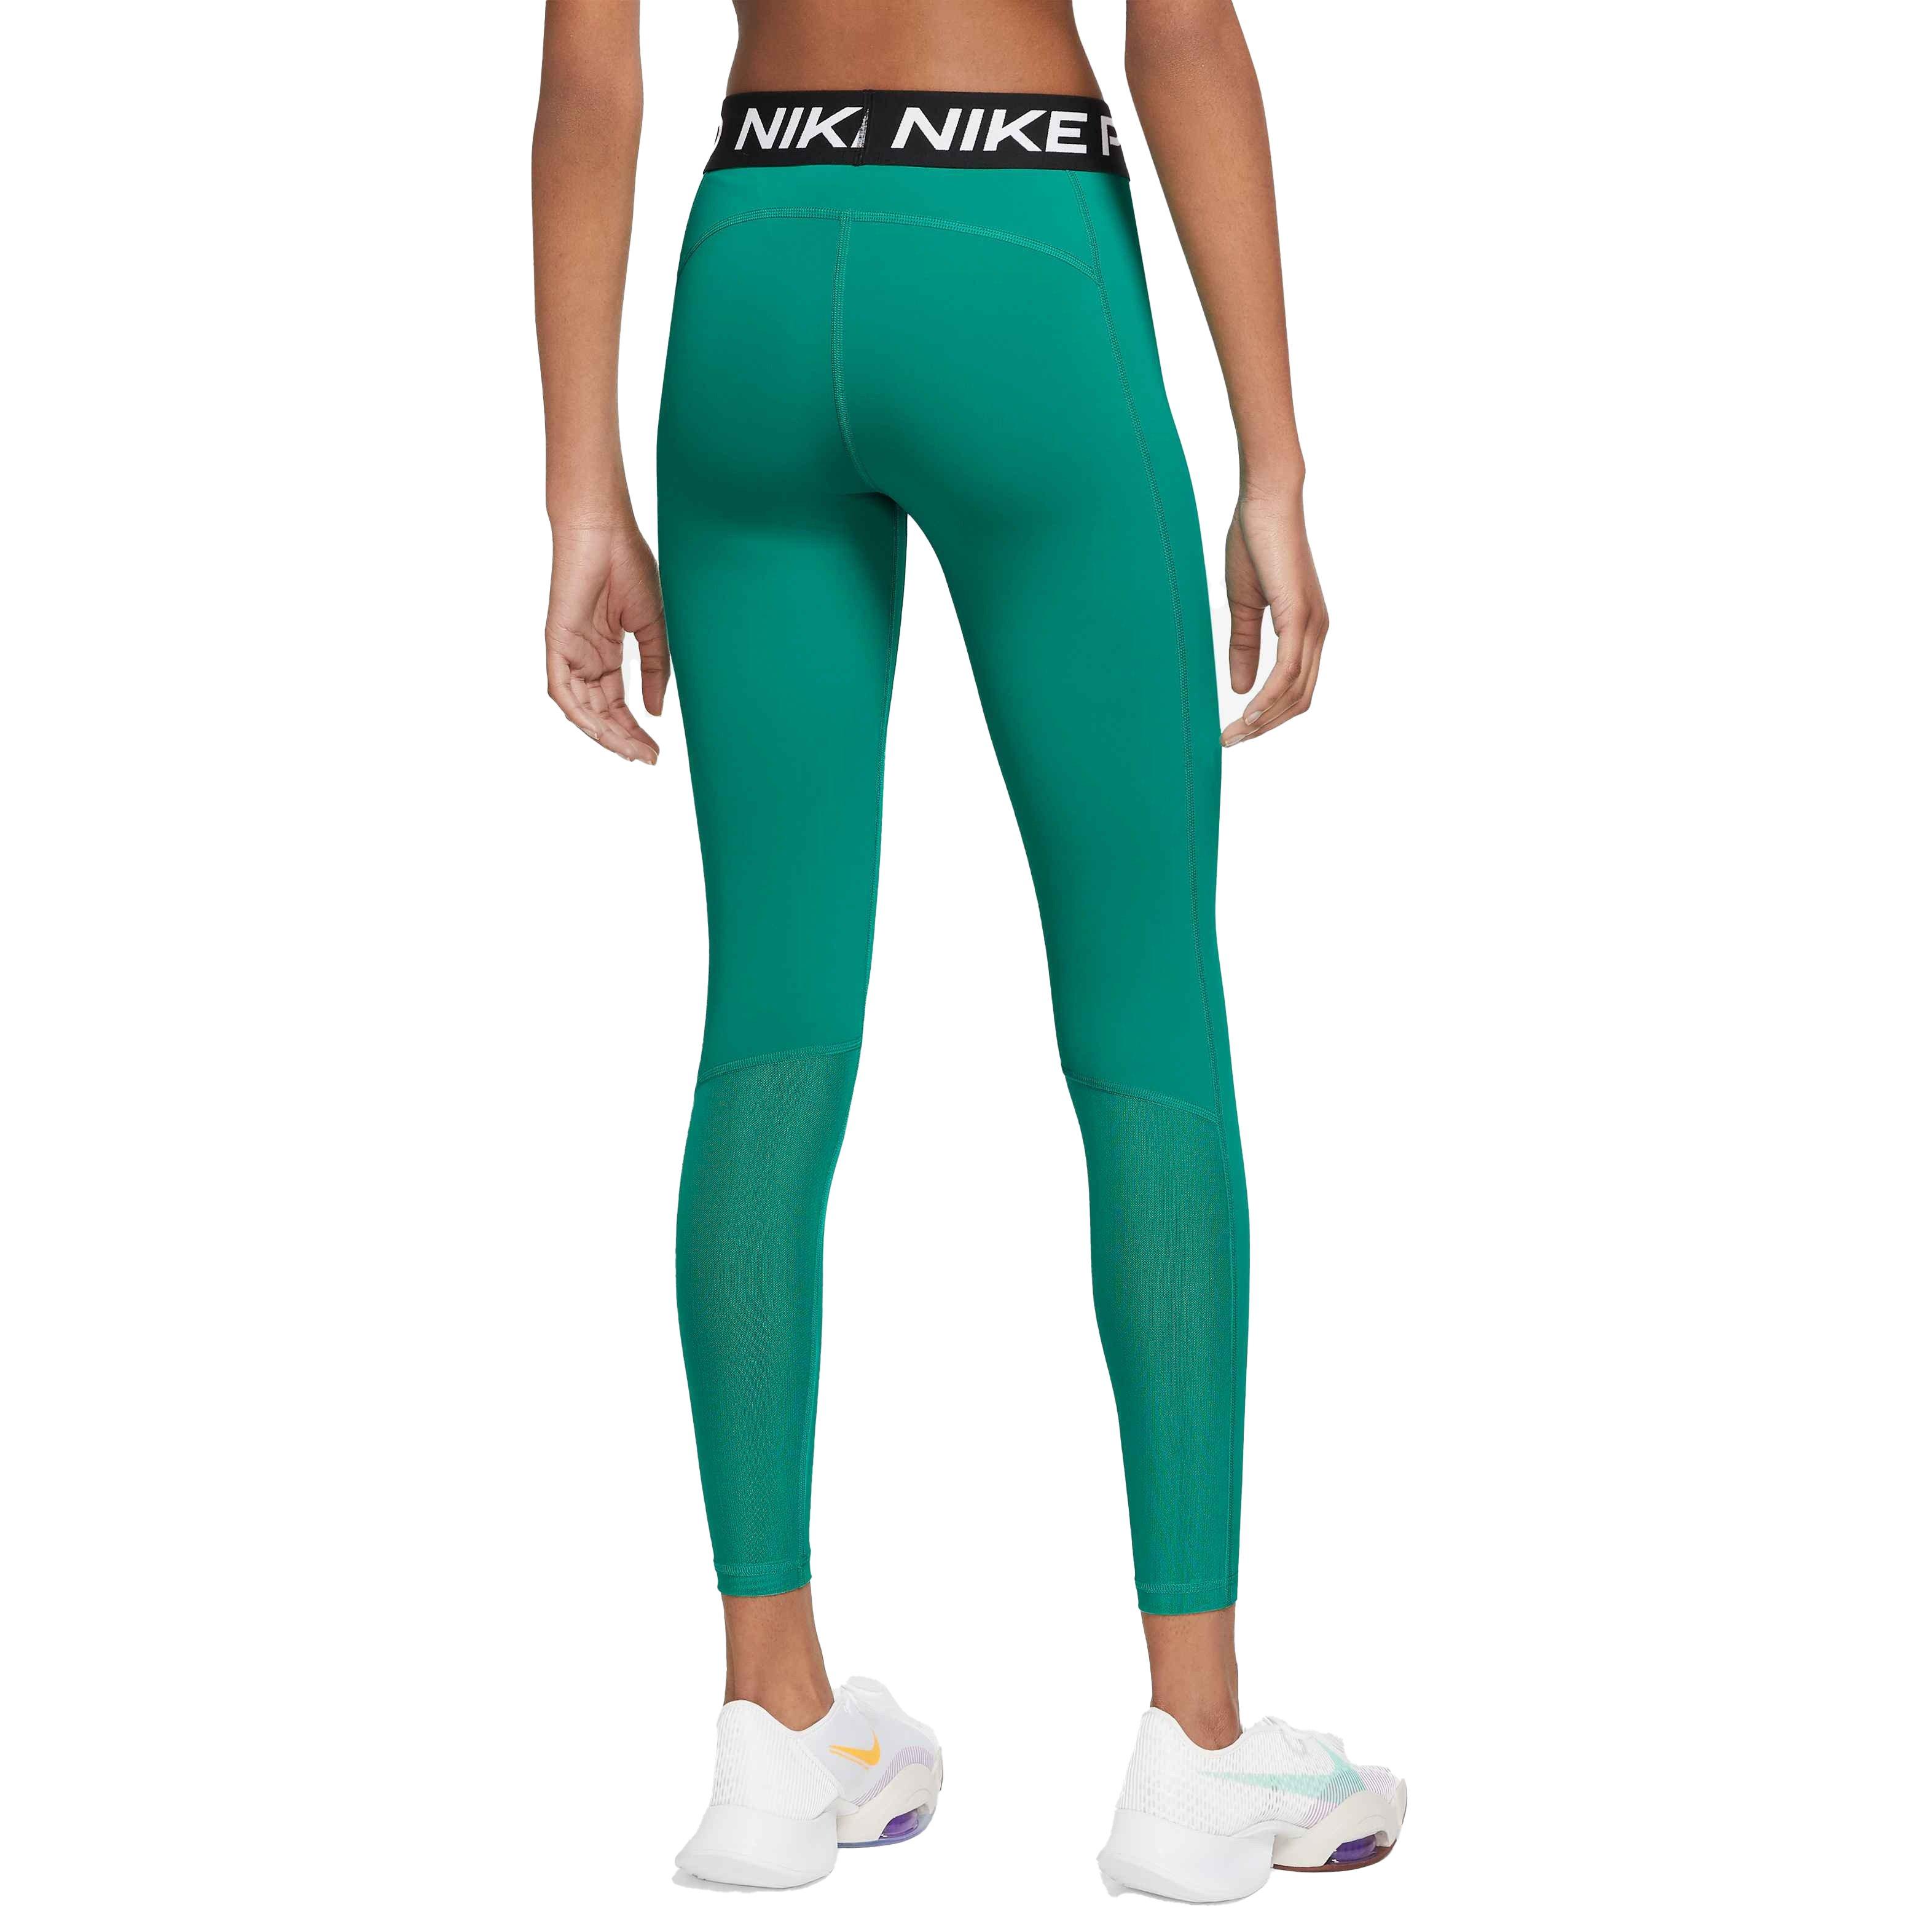 Nike Women's Pro 365 Mid-Rise Tight Leggings